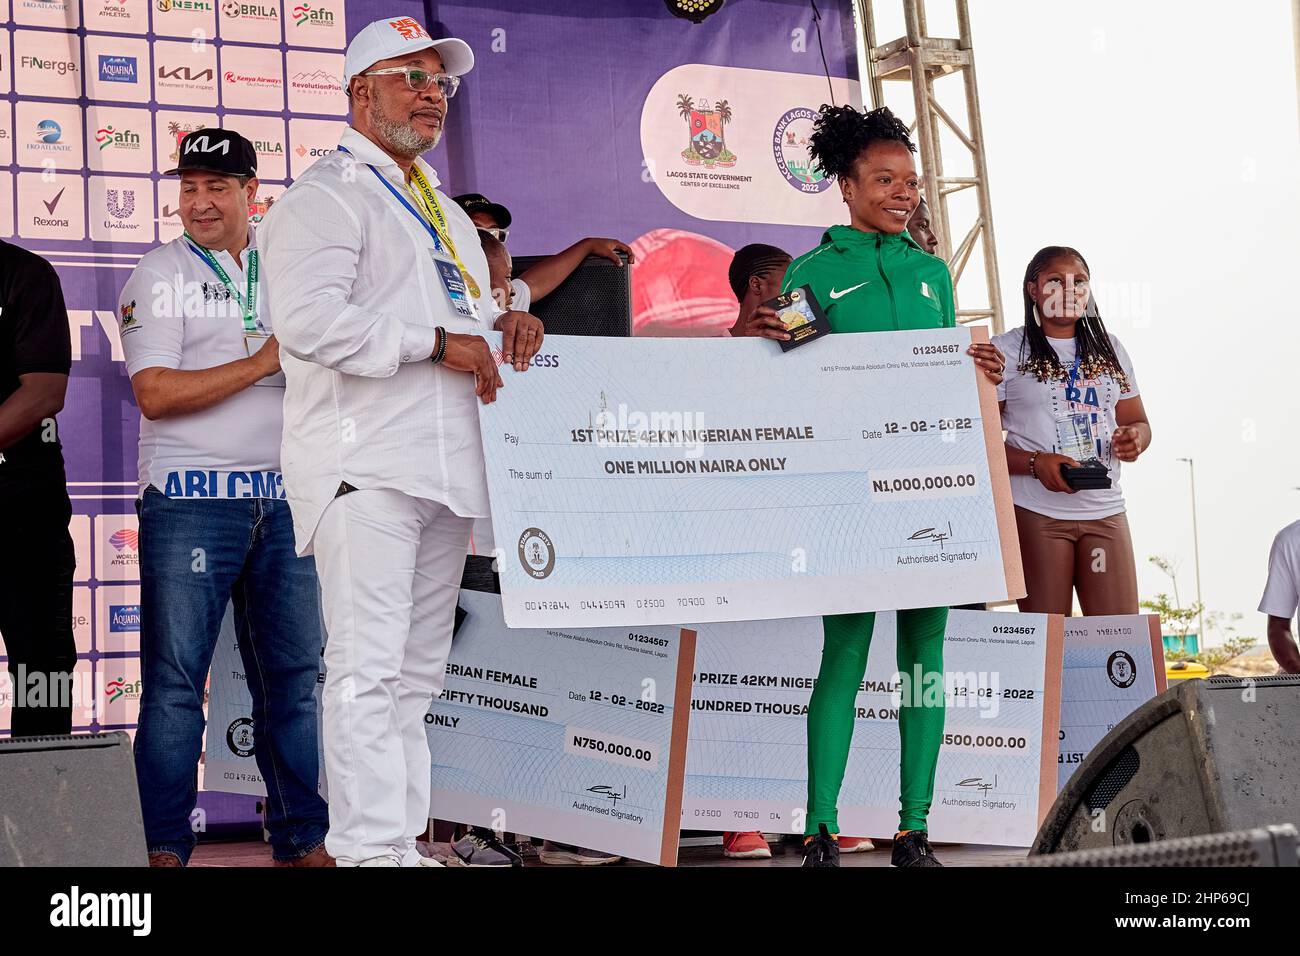 Il vincitore della maratona femminile riceve premi in denaro dopo aver gareggiato nella maratona di Access Bank Lagos City il 12 febbraio 2022. Foto Stock